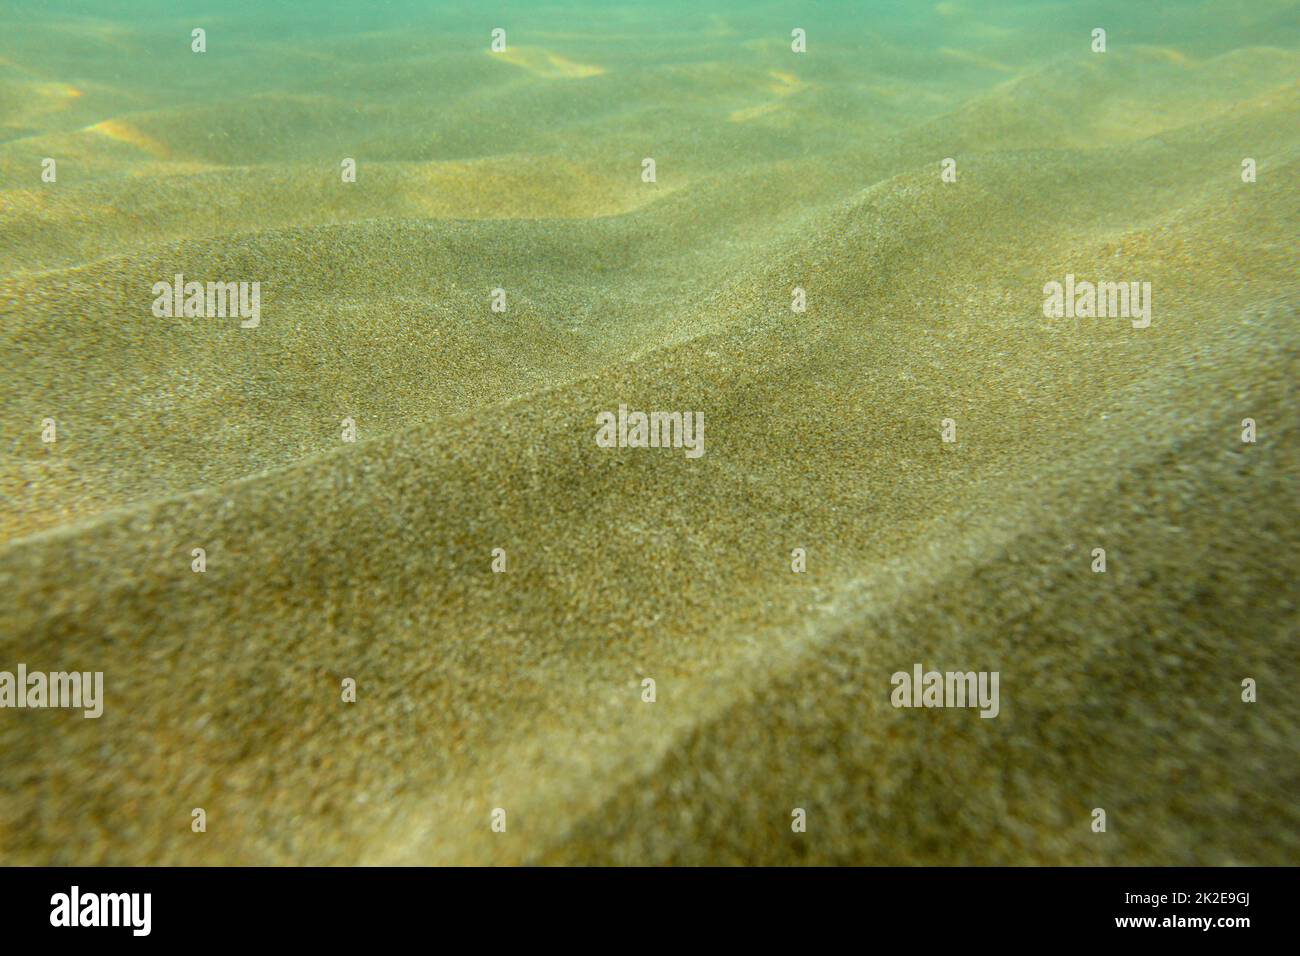 Foto subacquee, mare poco profondo con sabbia 'dunes' illuminata da sun. Foto Stock